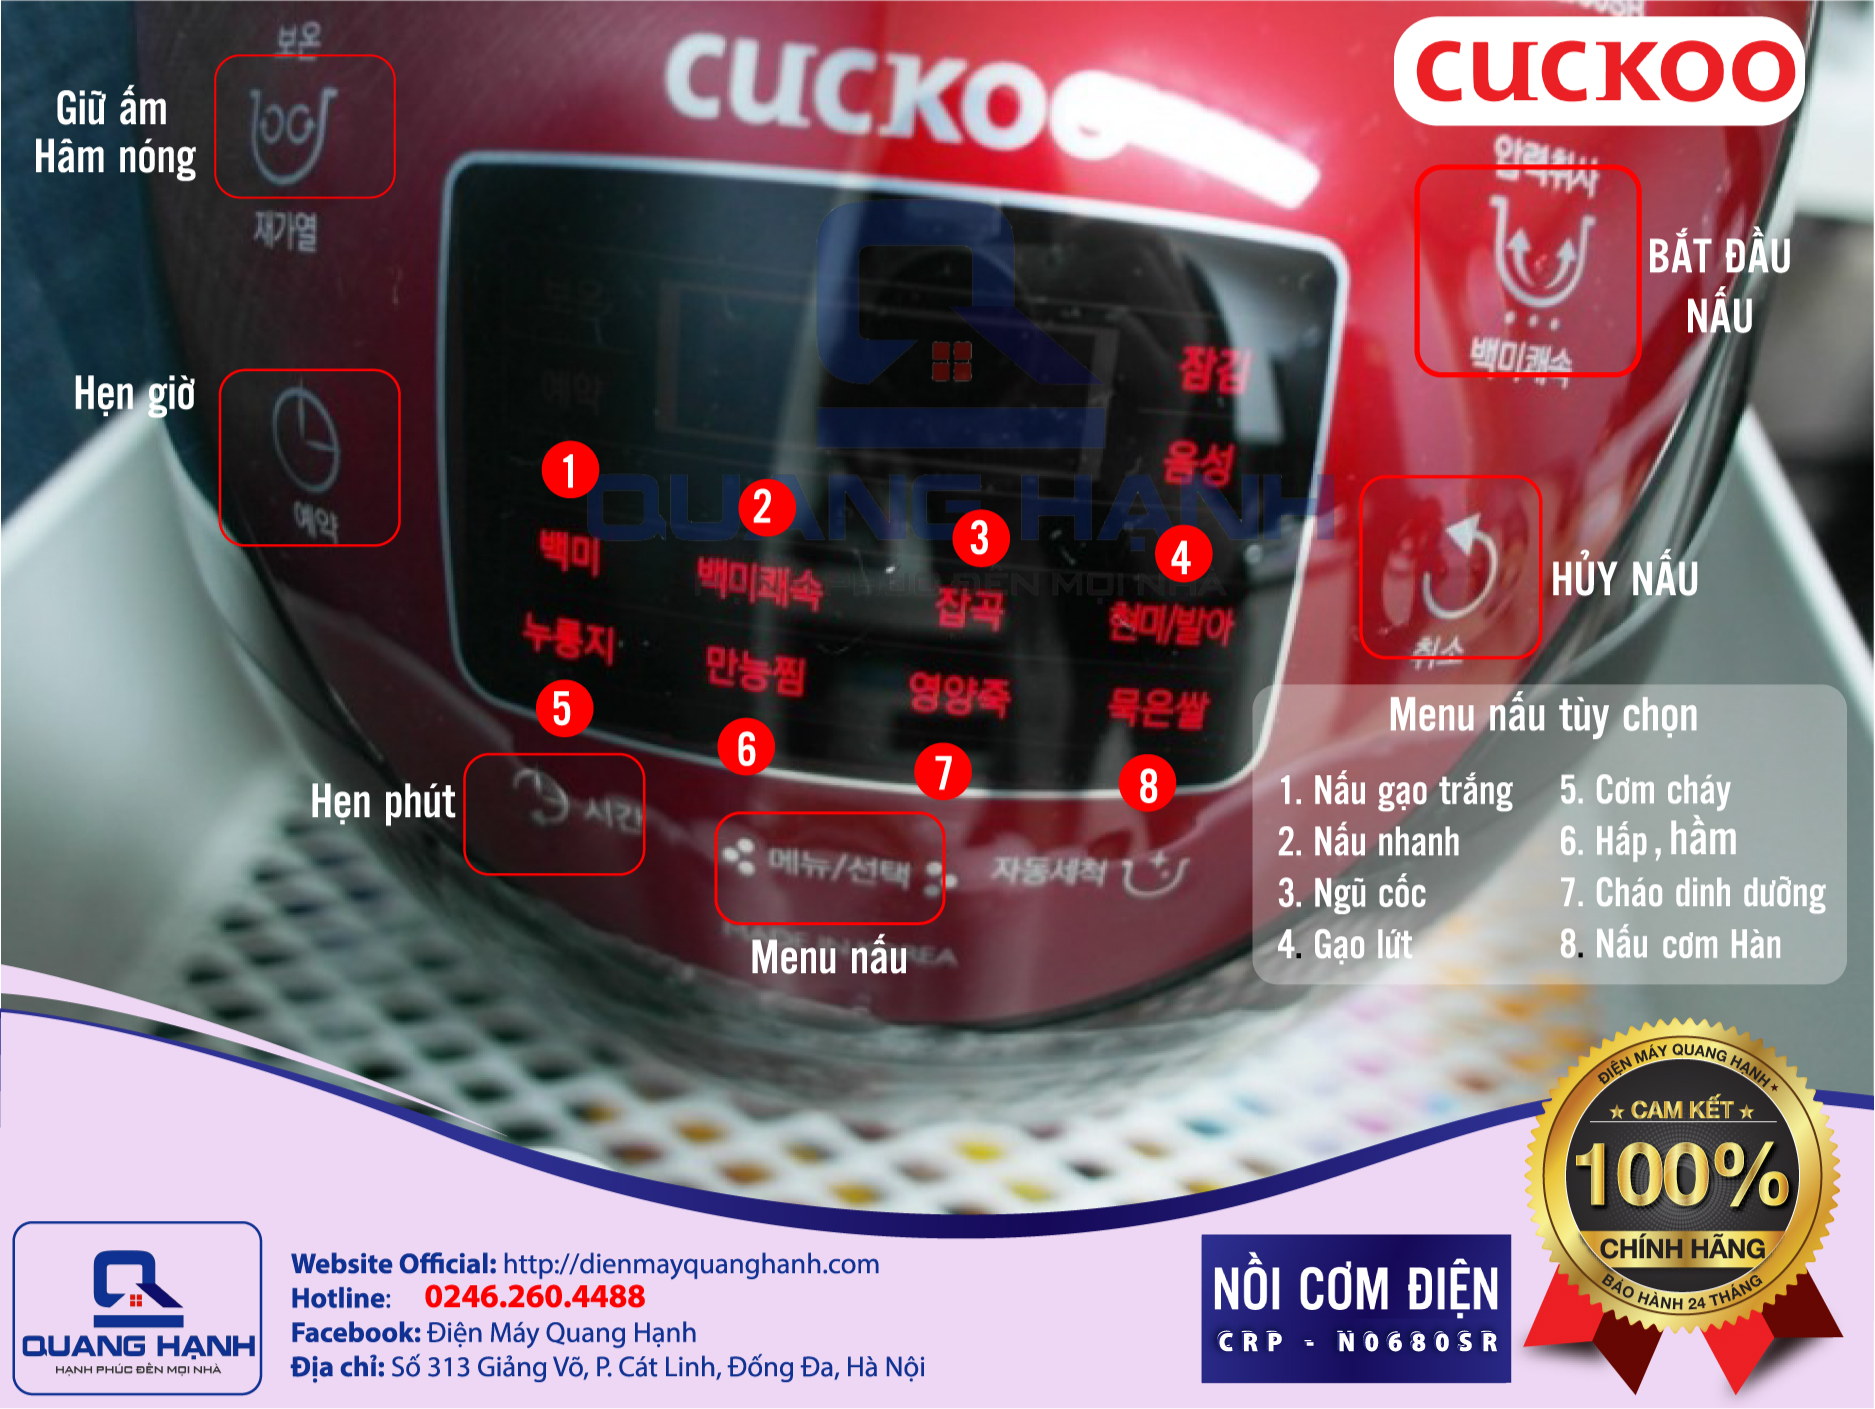 Nồi cơm áp suất điện tử Cuckoo CRP-N0680SR